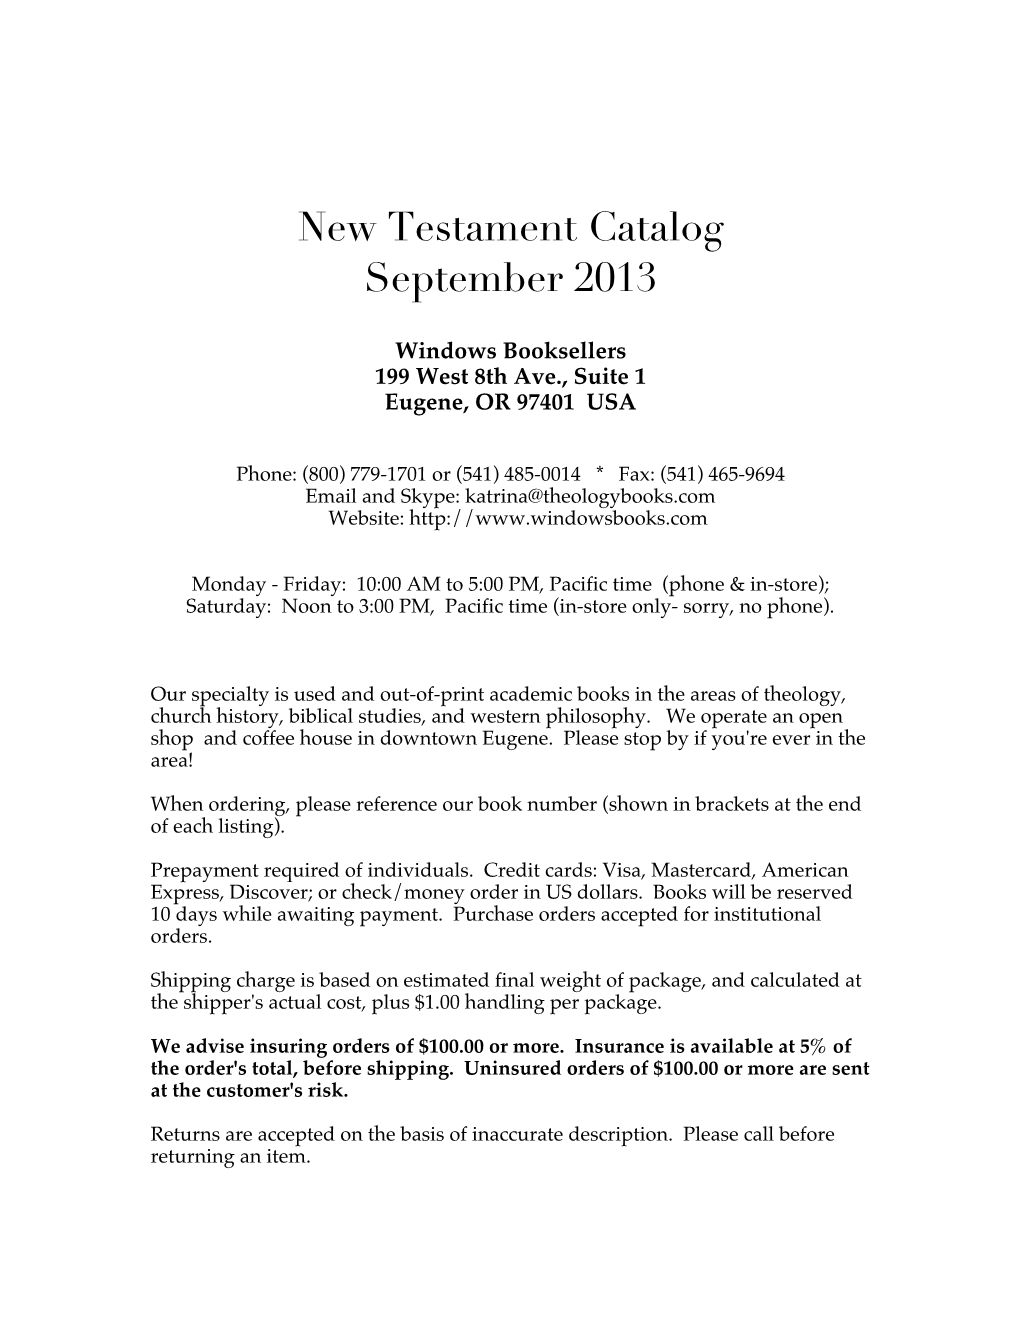 New Testament Catalog September 2013